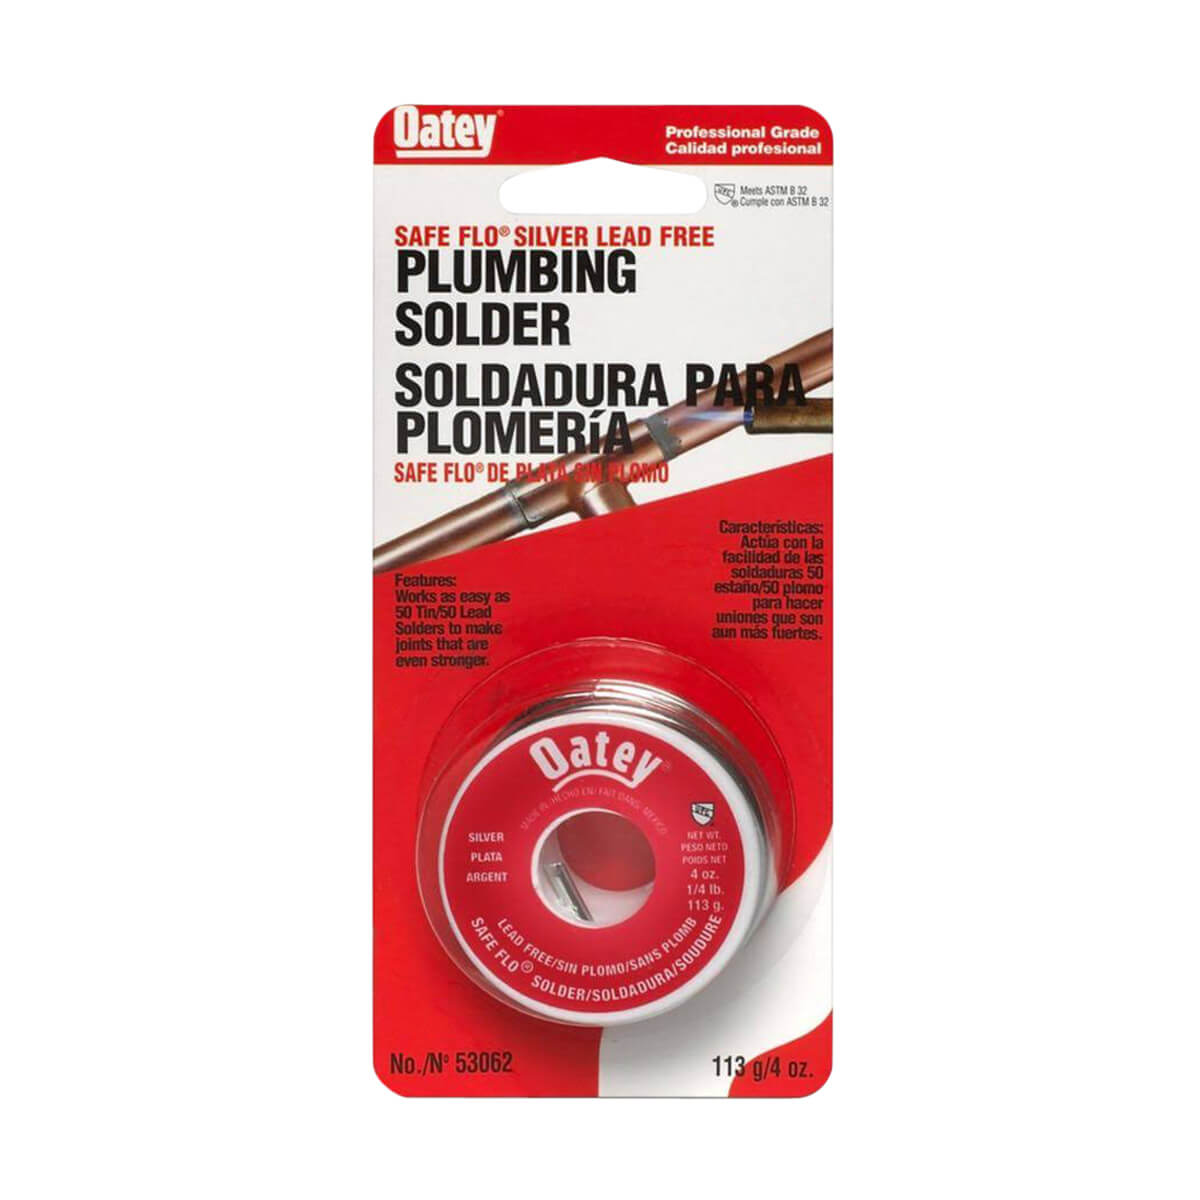 Oatey 48312 Safe-Flo Plumbing Solder Wire - 113 g